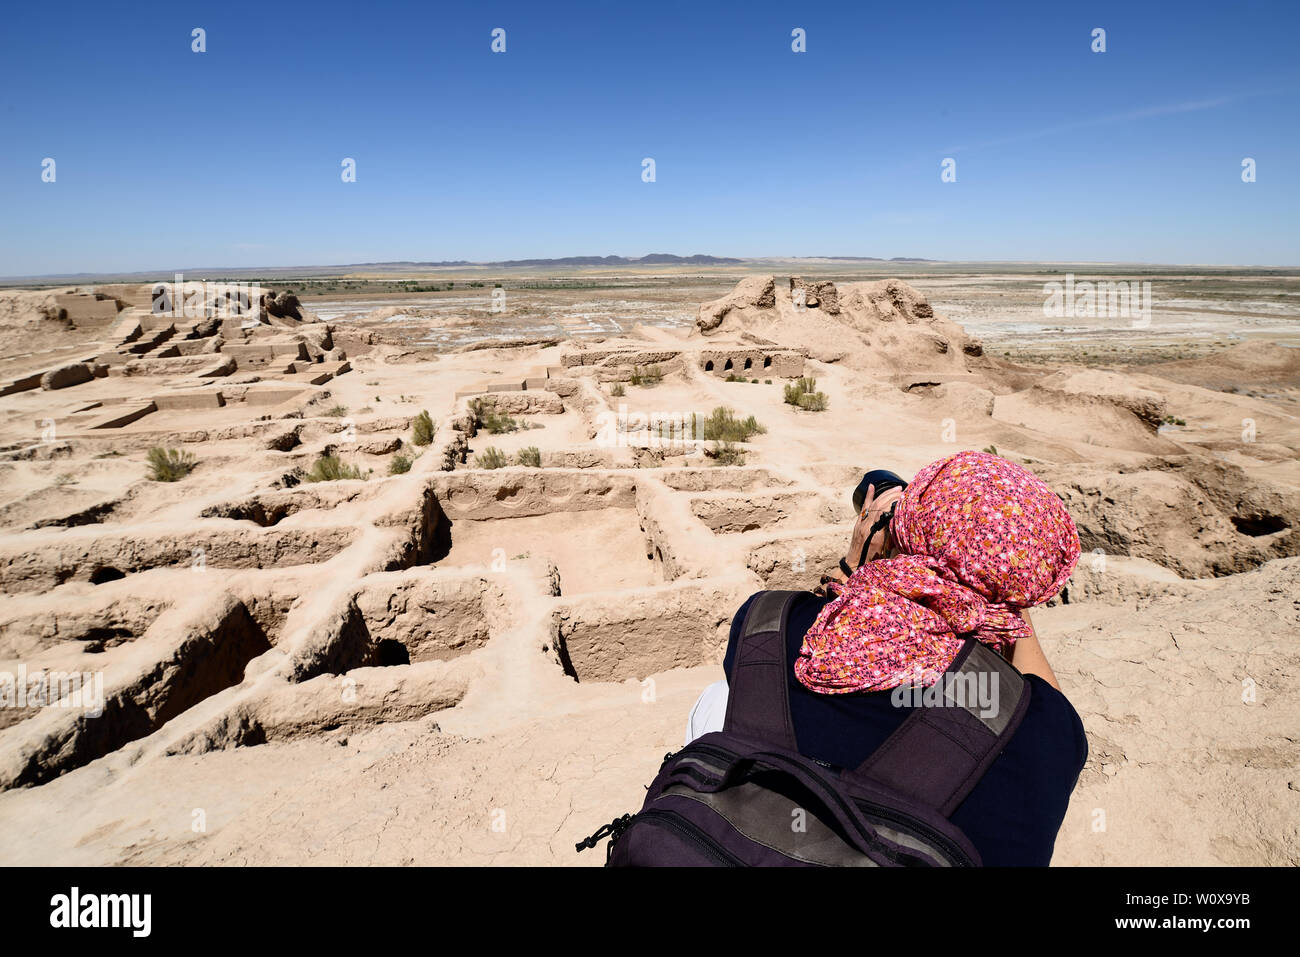 Uzbekistan, The ruins castles of ancient Khorezm – Toprak - Kala Stock Photo